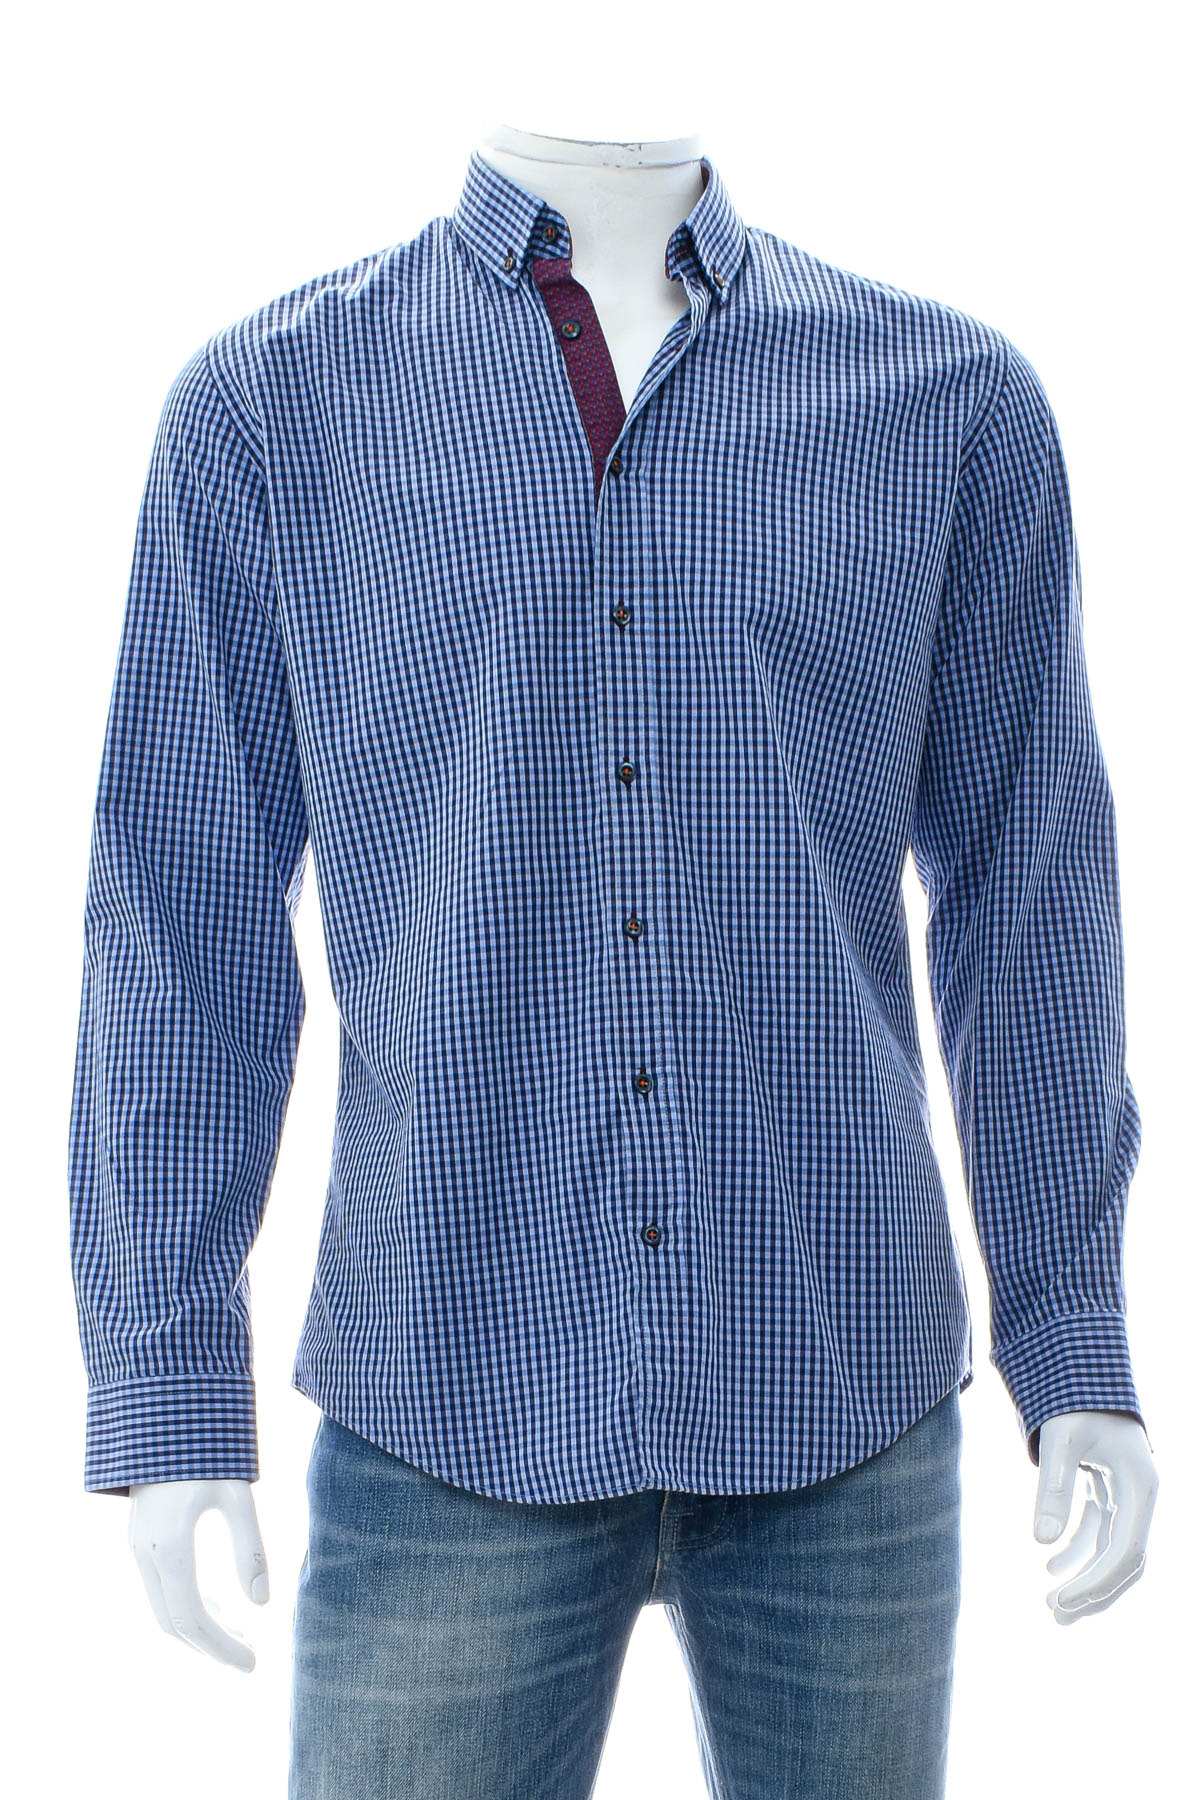 Ανδρικό πουκάμισο - Redford - 0